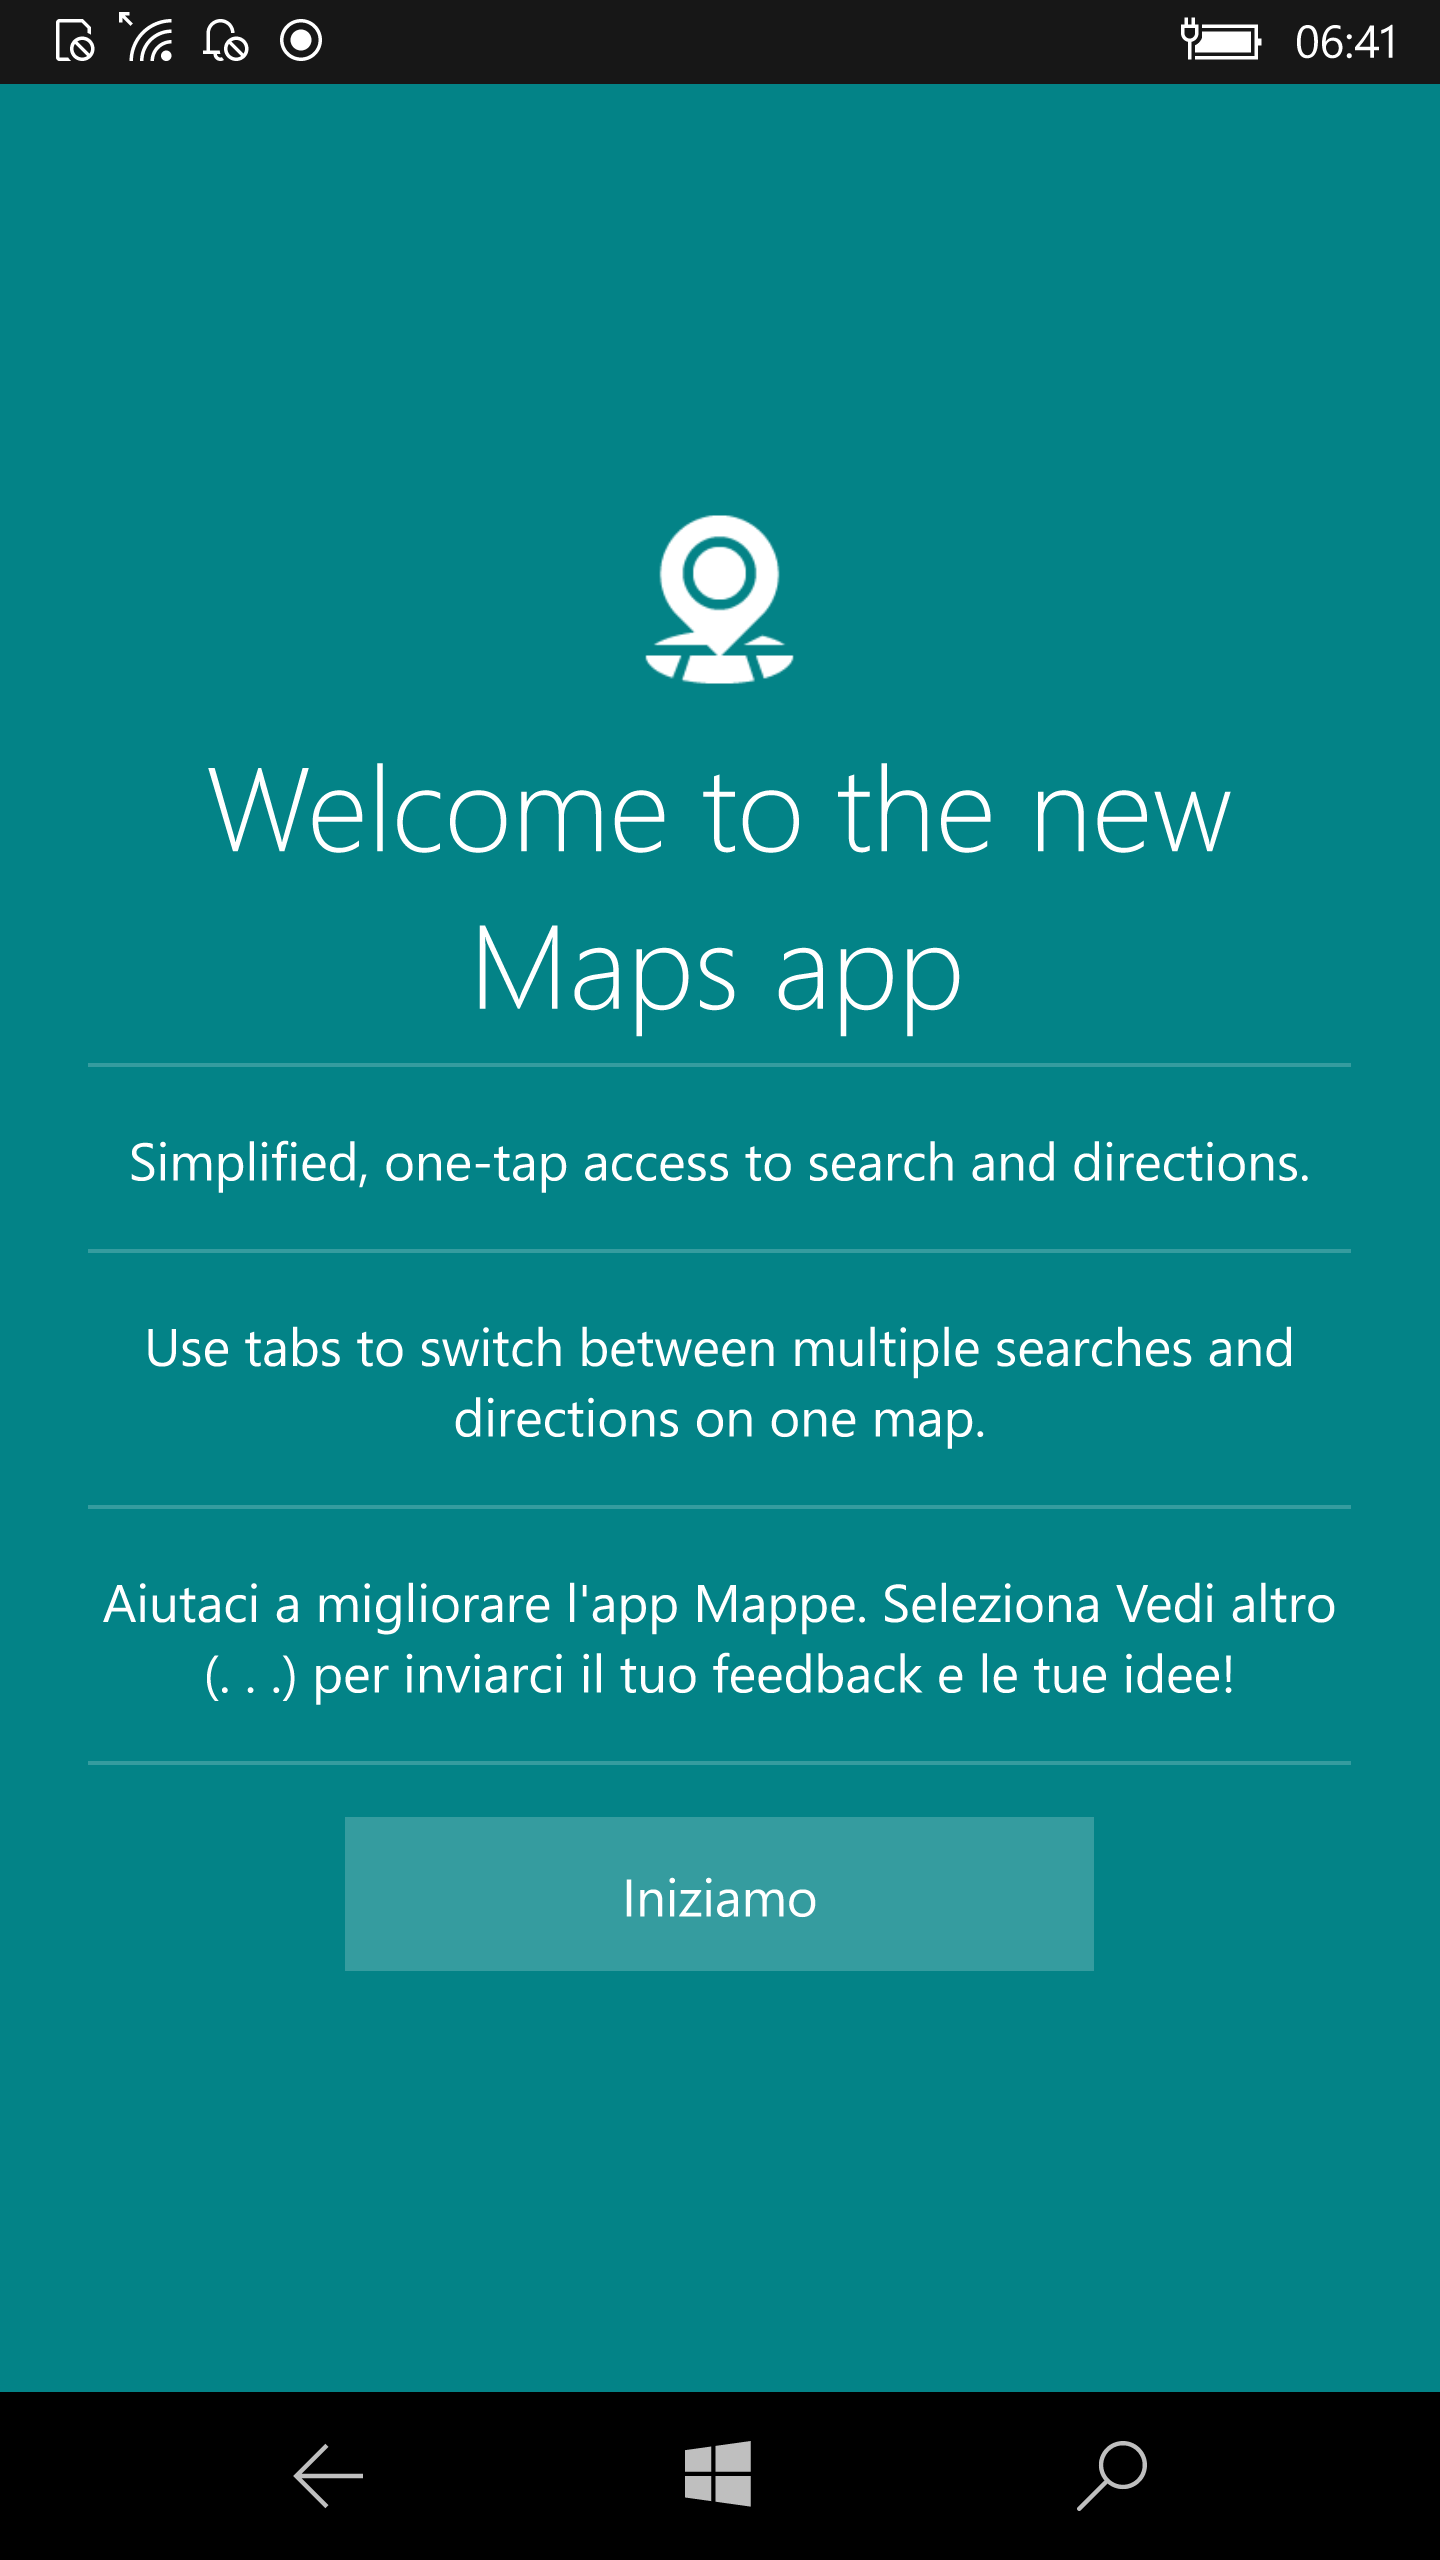 Novita app Mappe - Build 14291